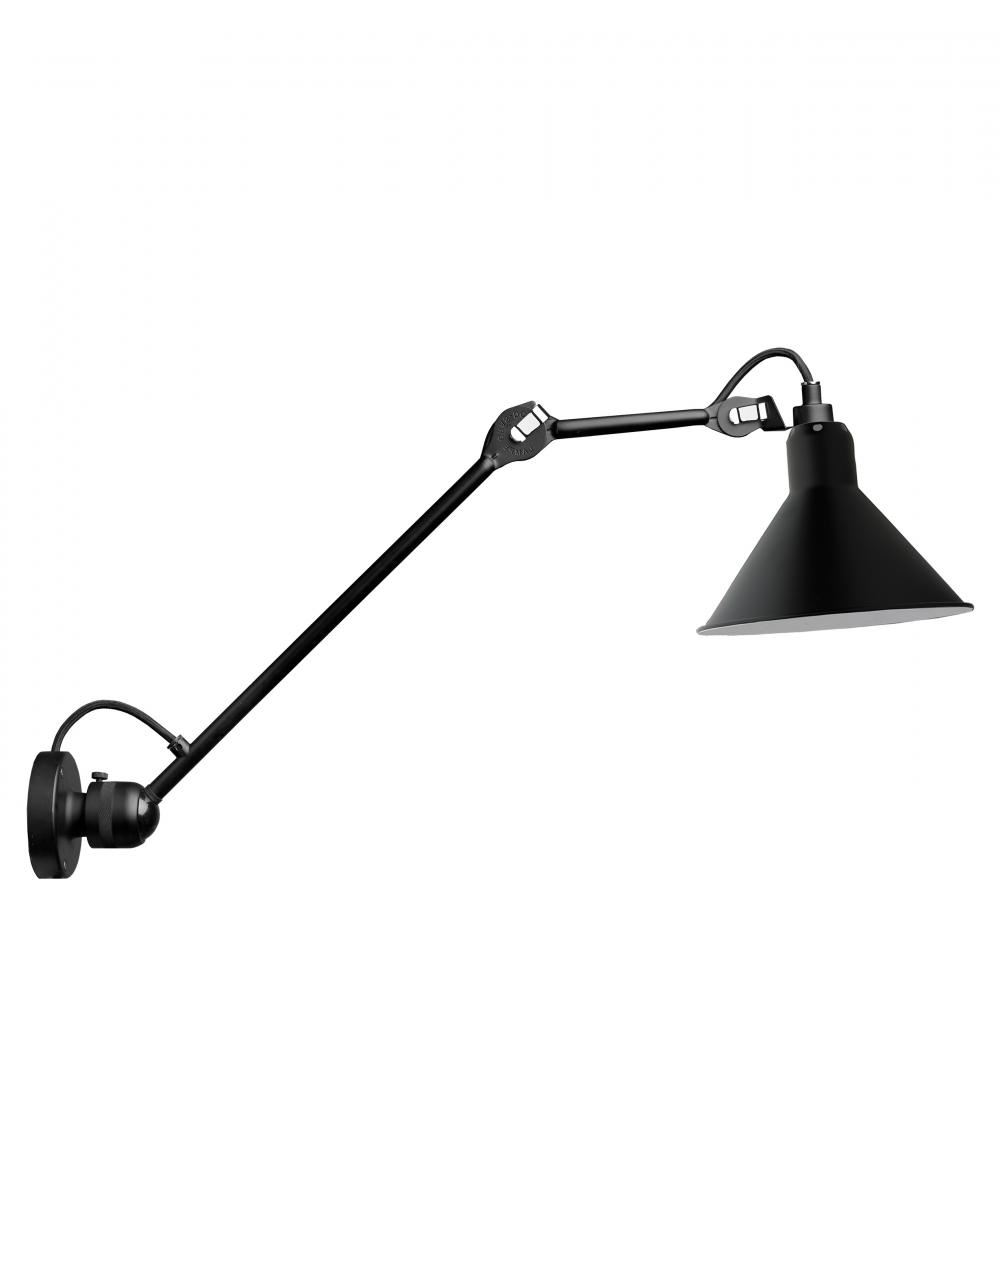 Lampe Gras 304 Medium Wall Light Black Shade Conic Shade